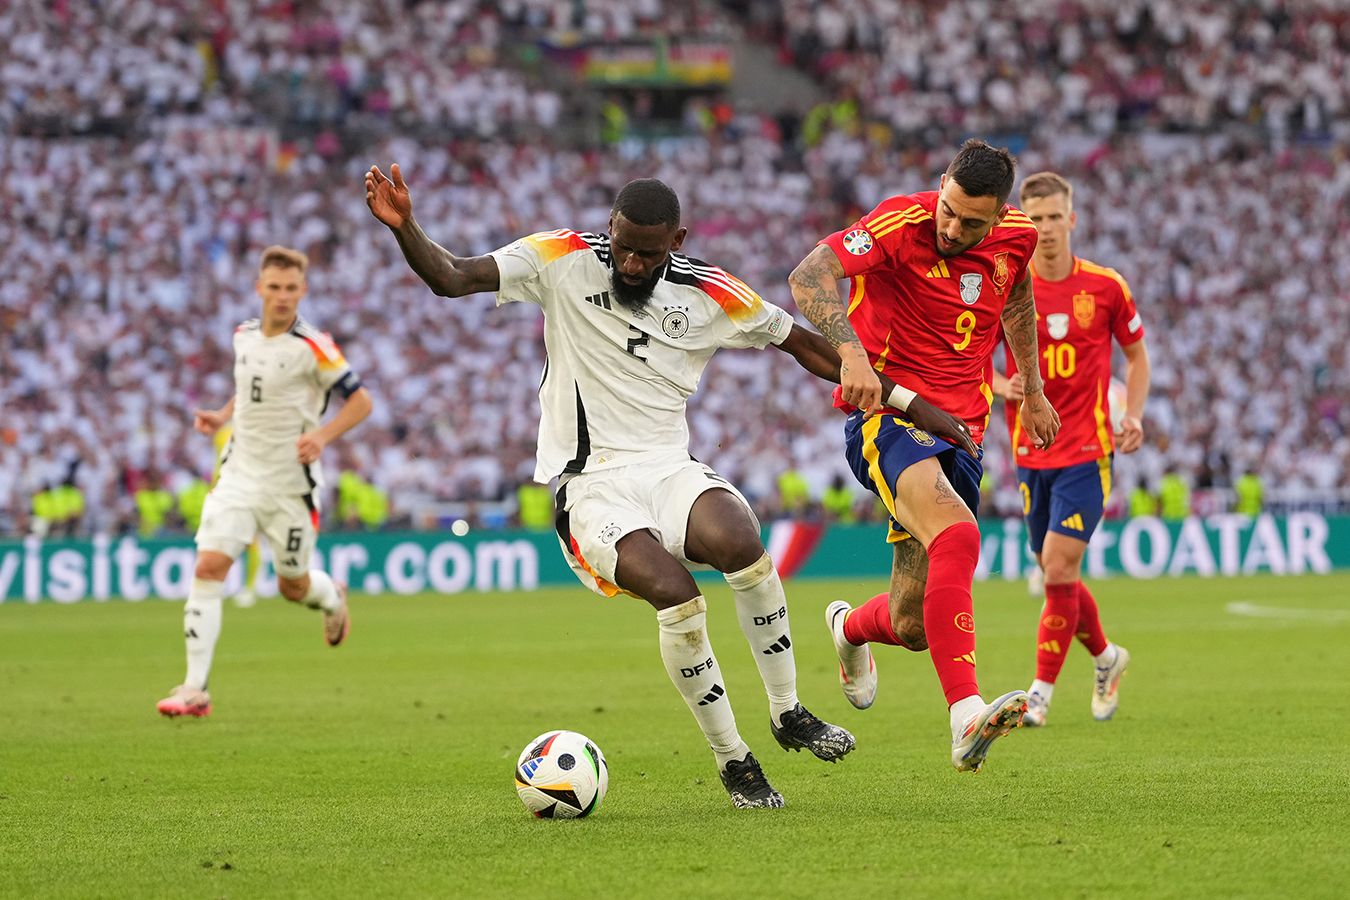 Эдуард Мор высказался о неназначенном пенальти в матче Испания — Германия на Евро